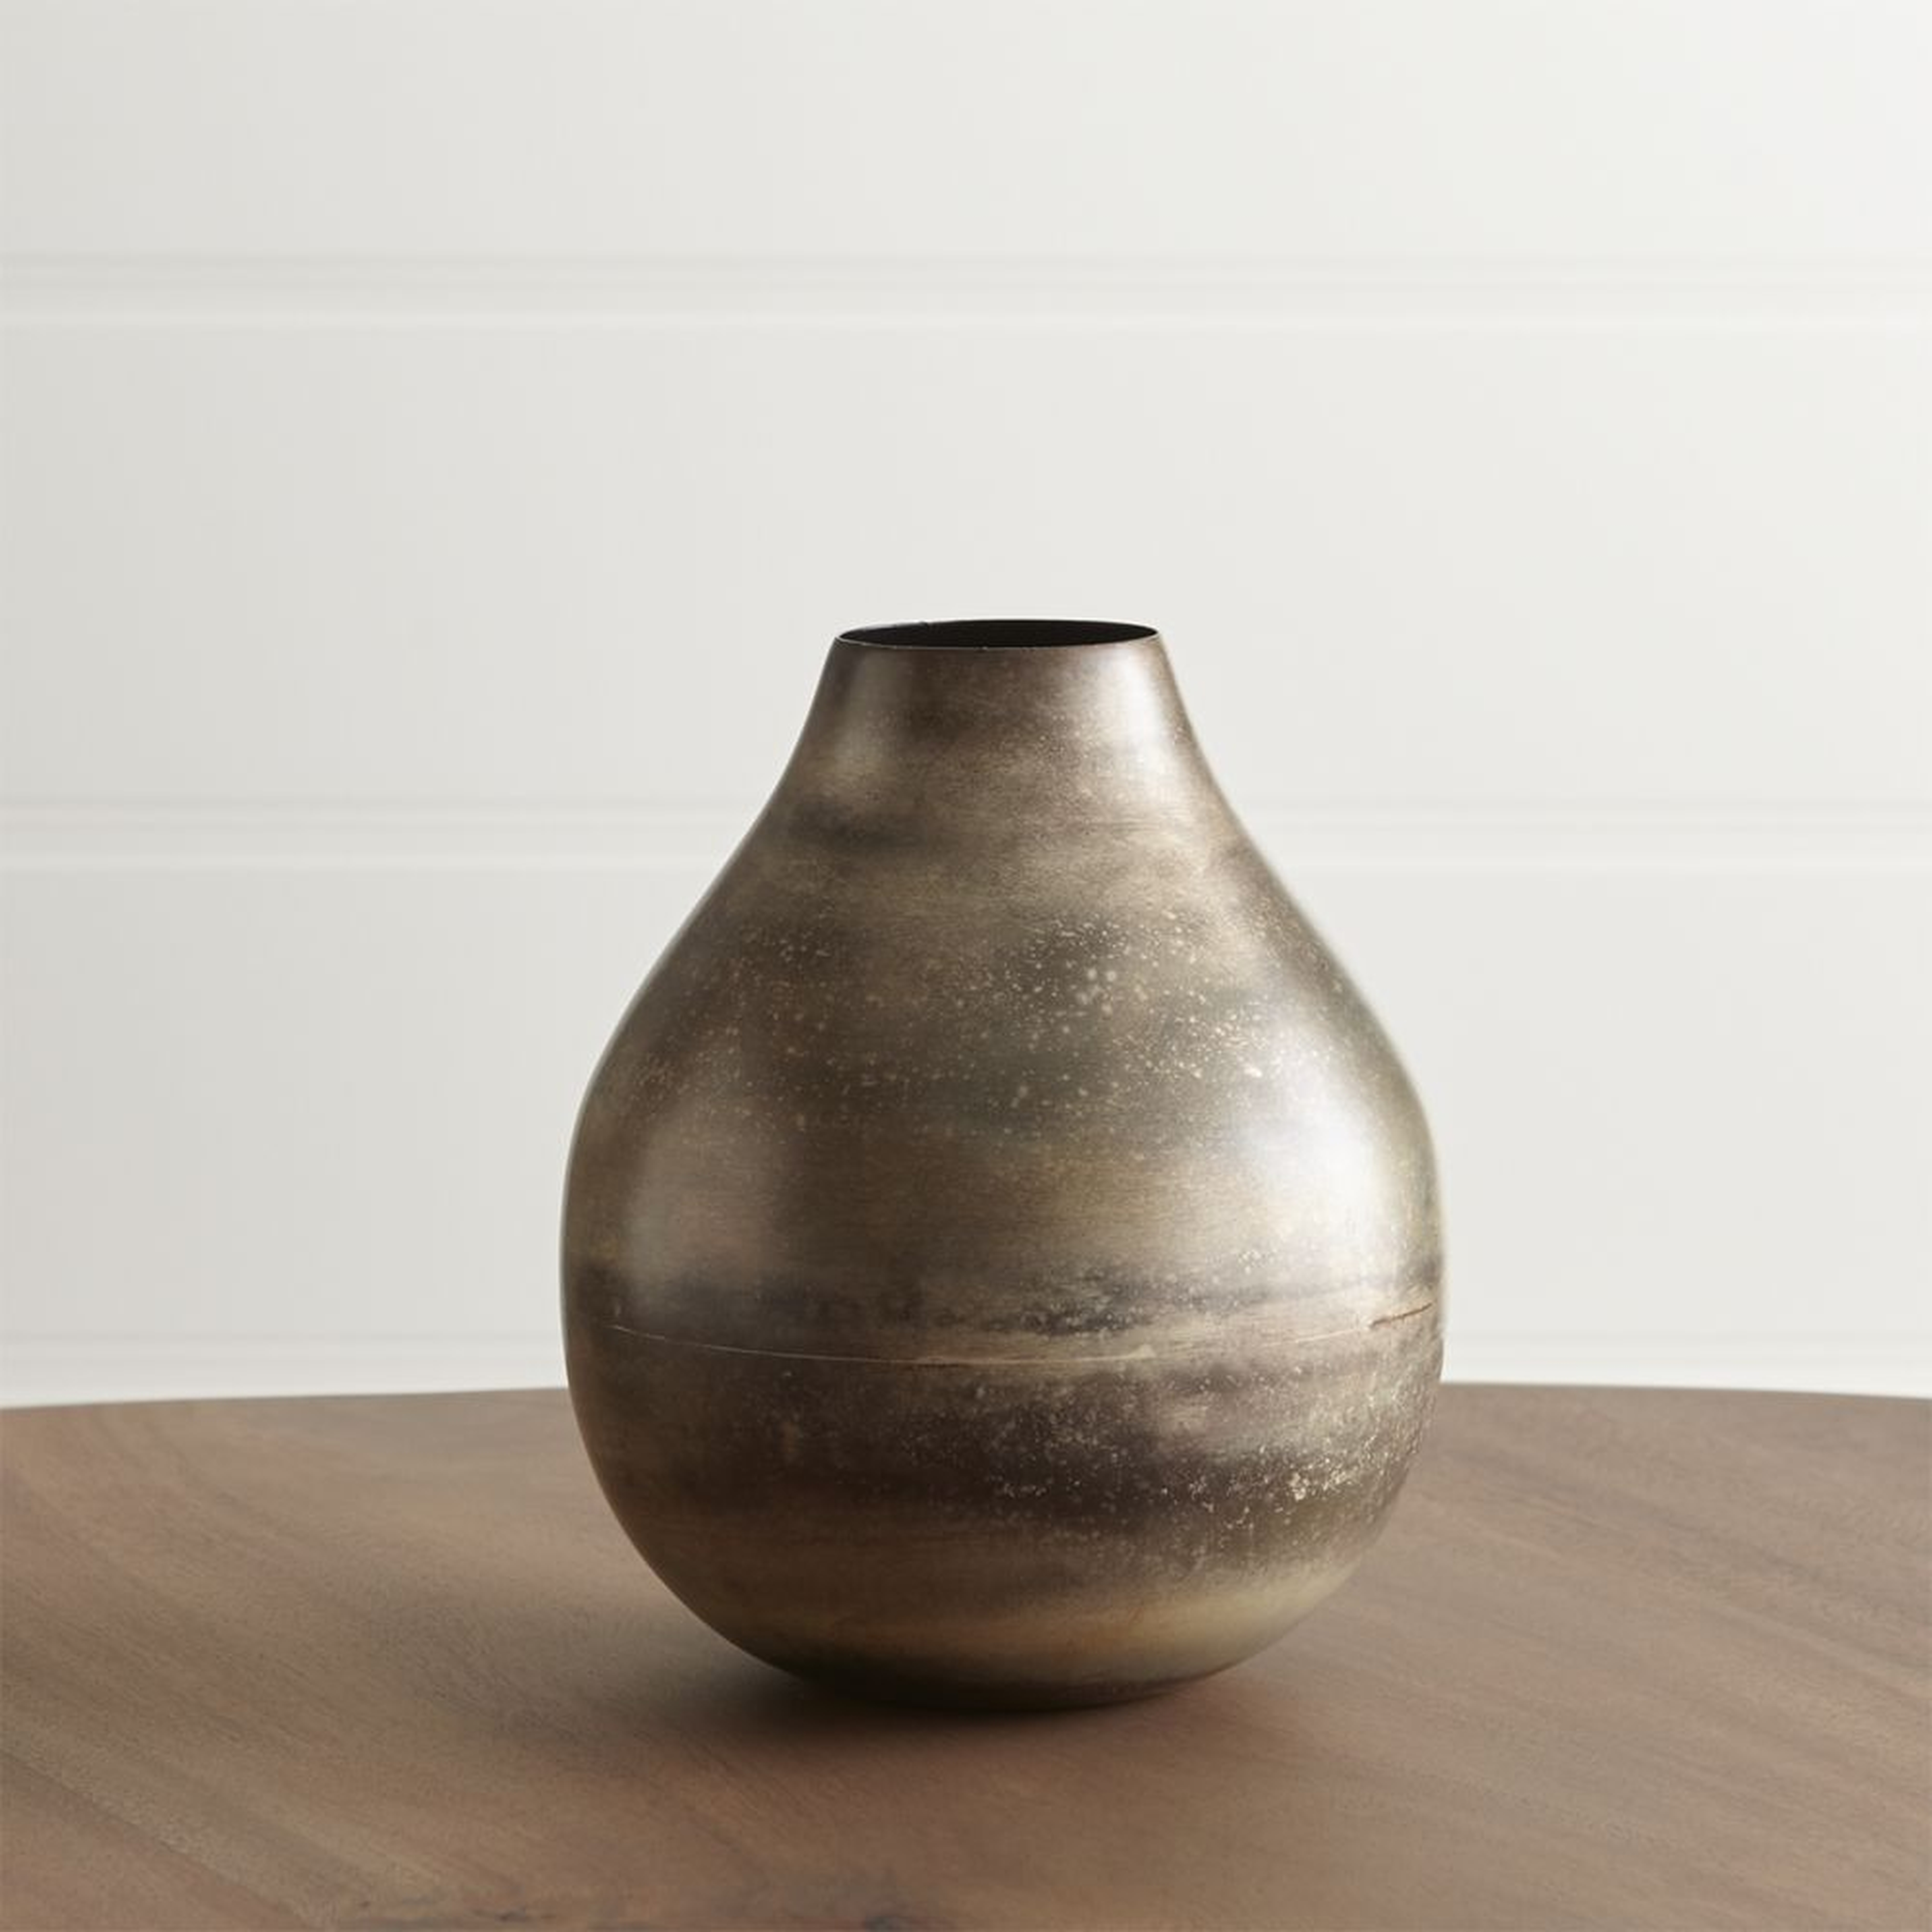 Bringham Small Metal Vase - Crate and Barrel